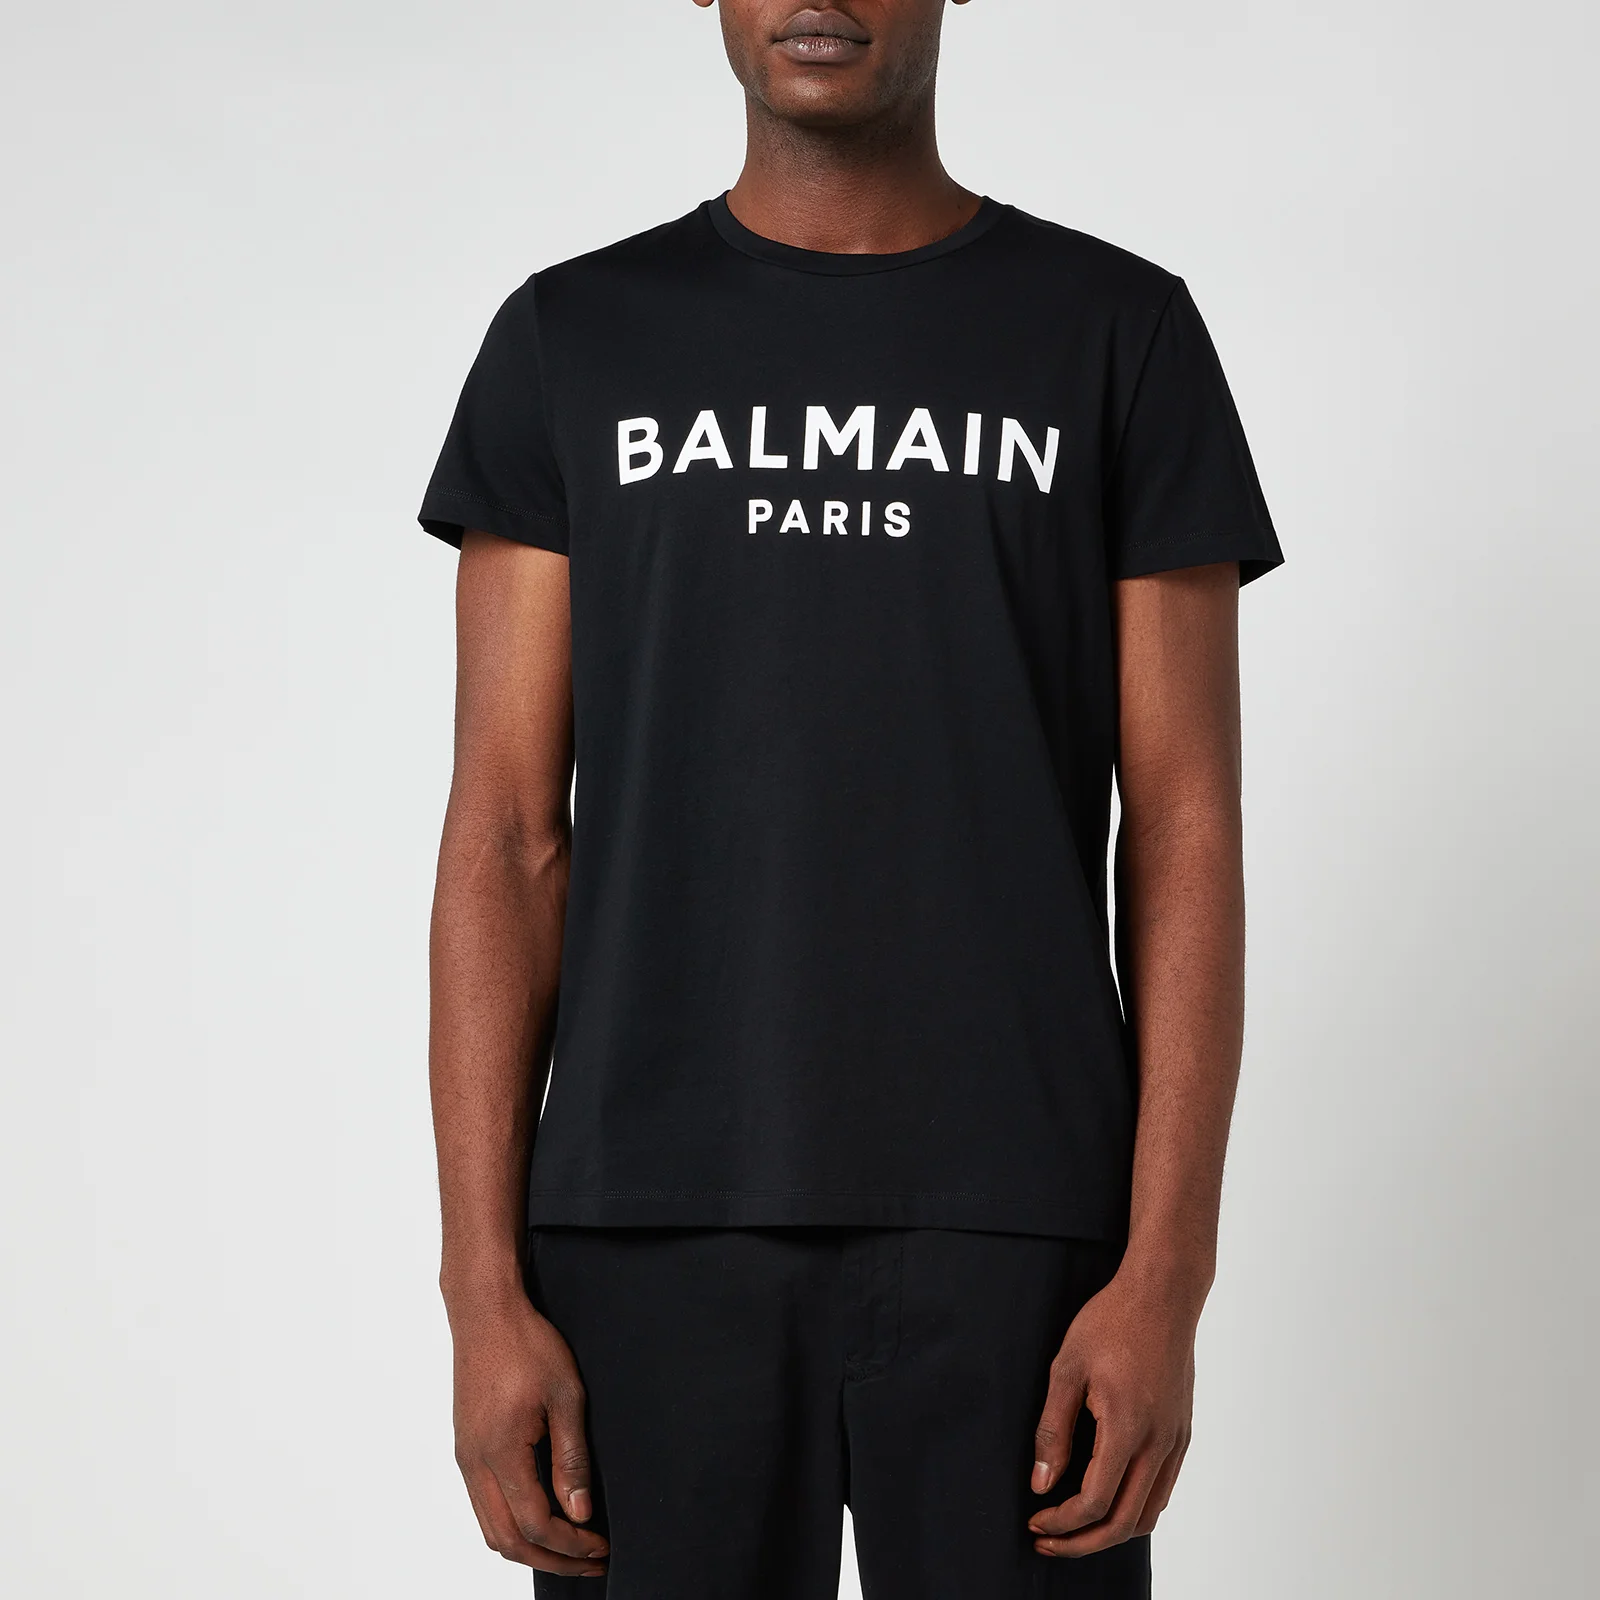 Balmain Men's Printed Logo T-Shirt - Black/White Image 1